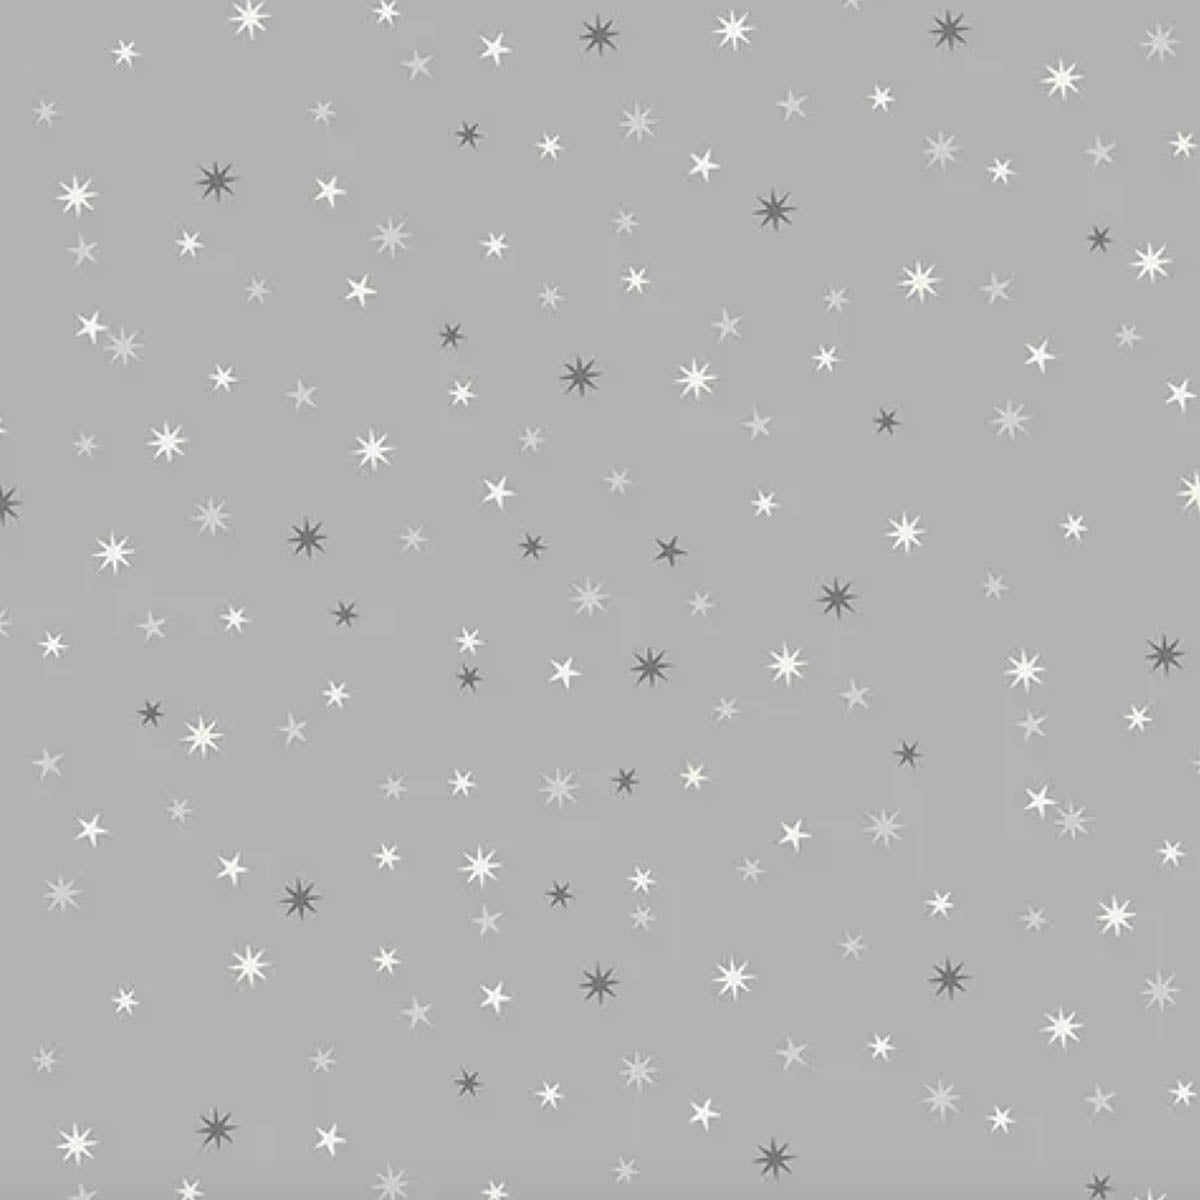 STARS - SCANDI CHRISTMAS 2022 - 100% Cotton - by Makower UK